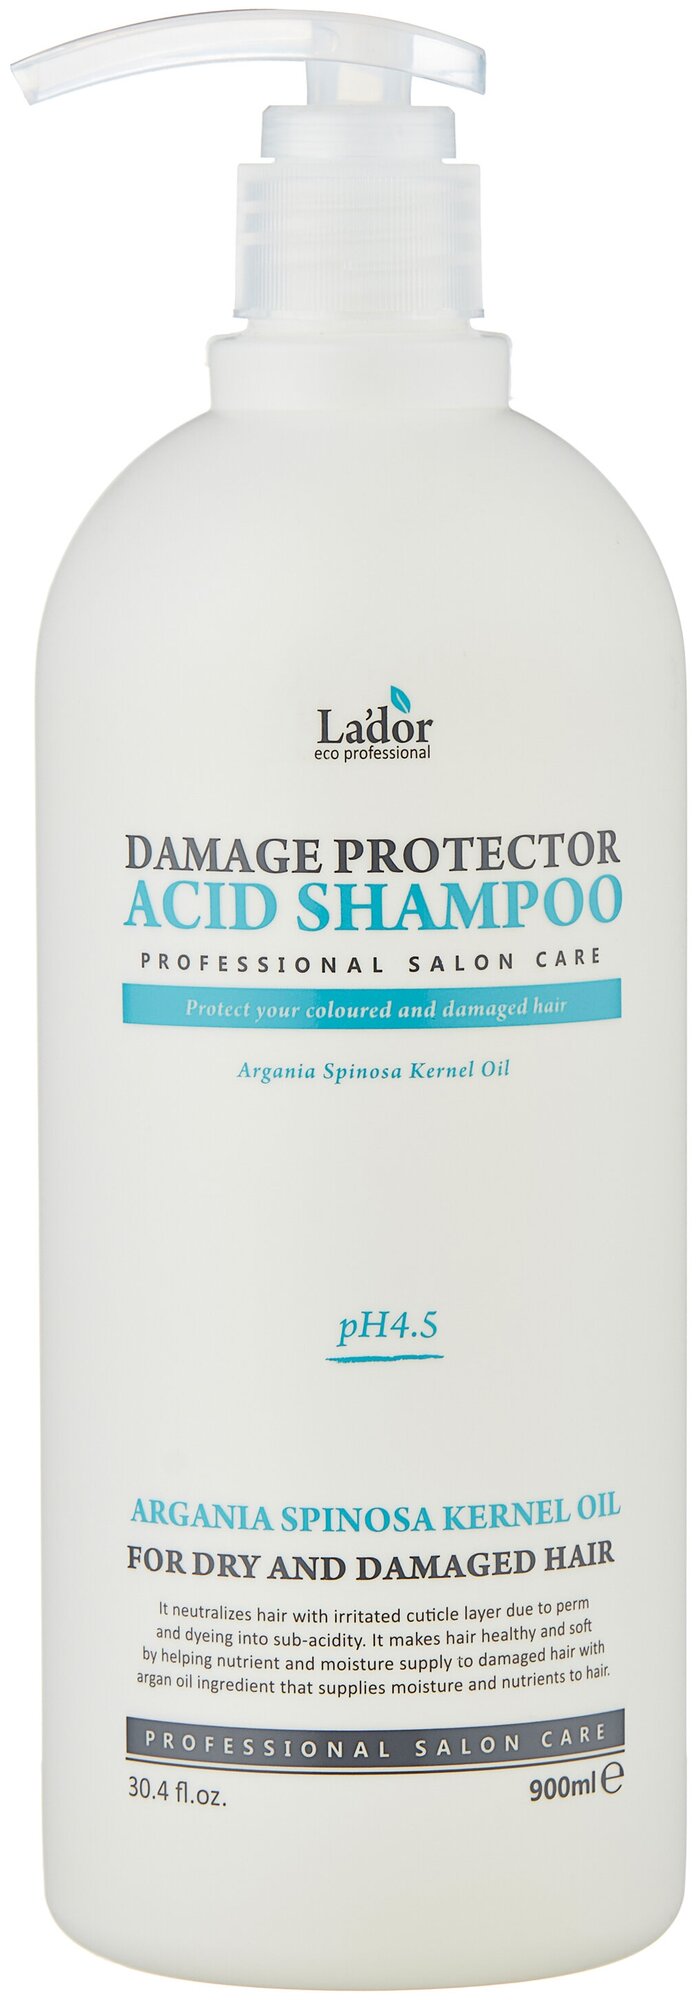 La'dor шампунь Damaged Protector Acid для сухих и поврежденных волос